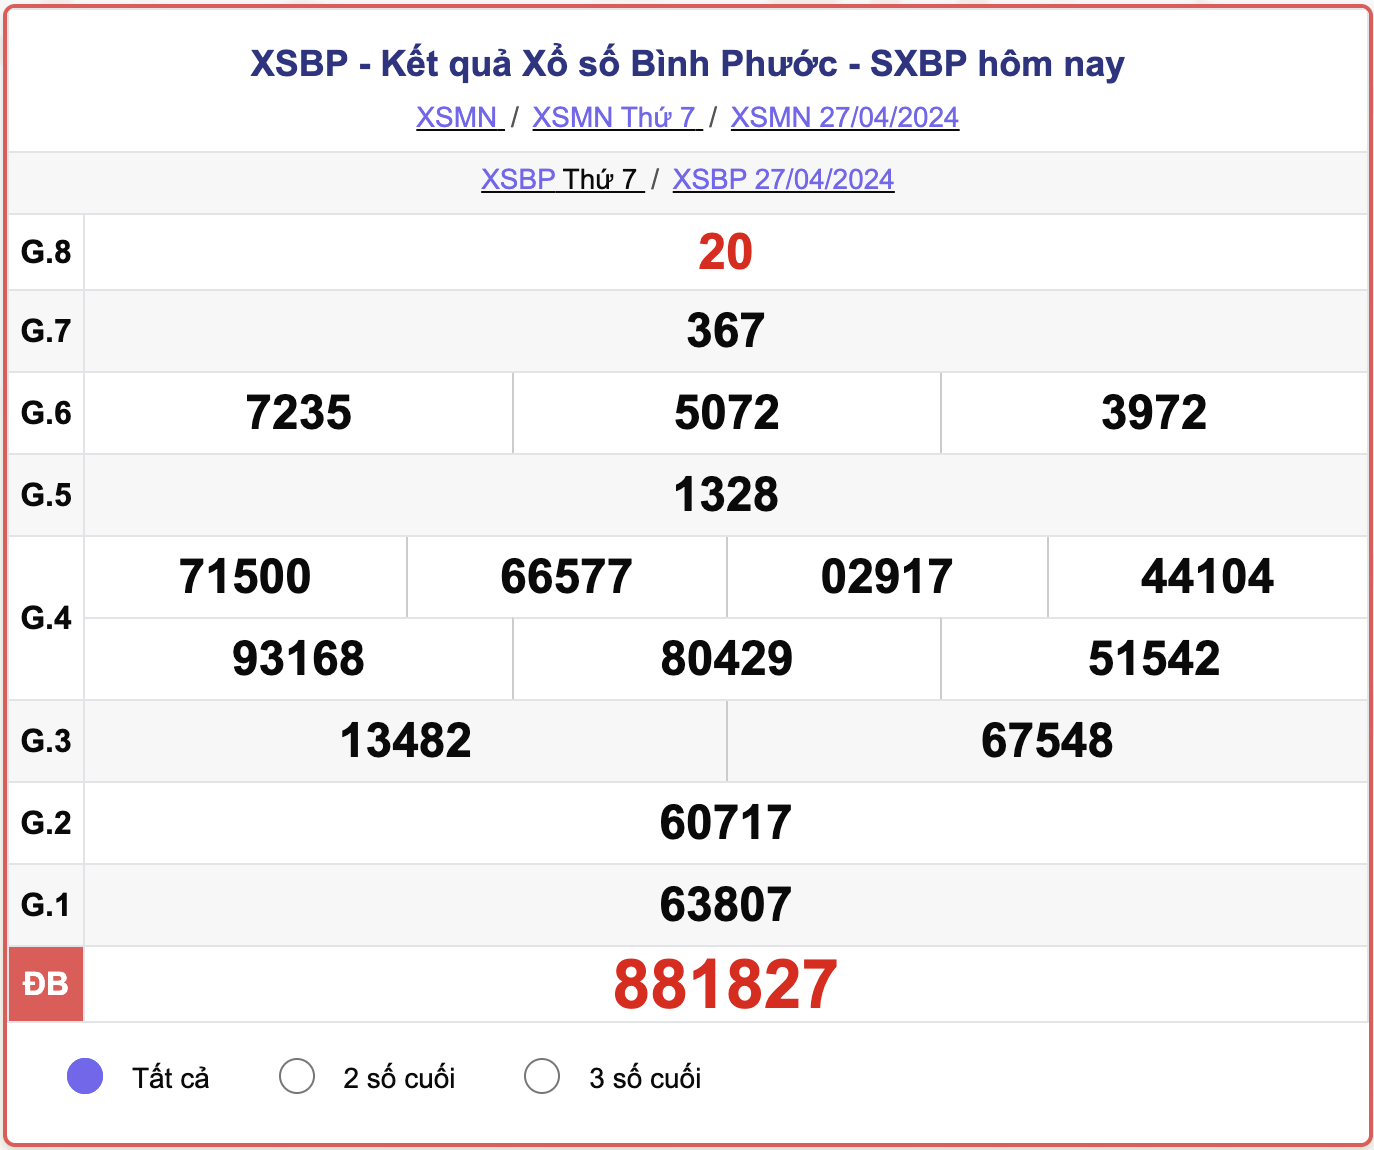 XSBP thứ Bảy, kết quả xổ số Bình Phước ngày 27/4/2024.